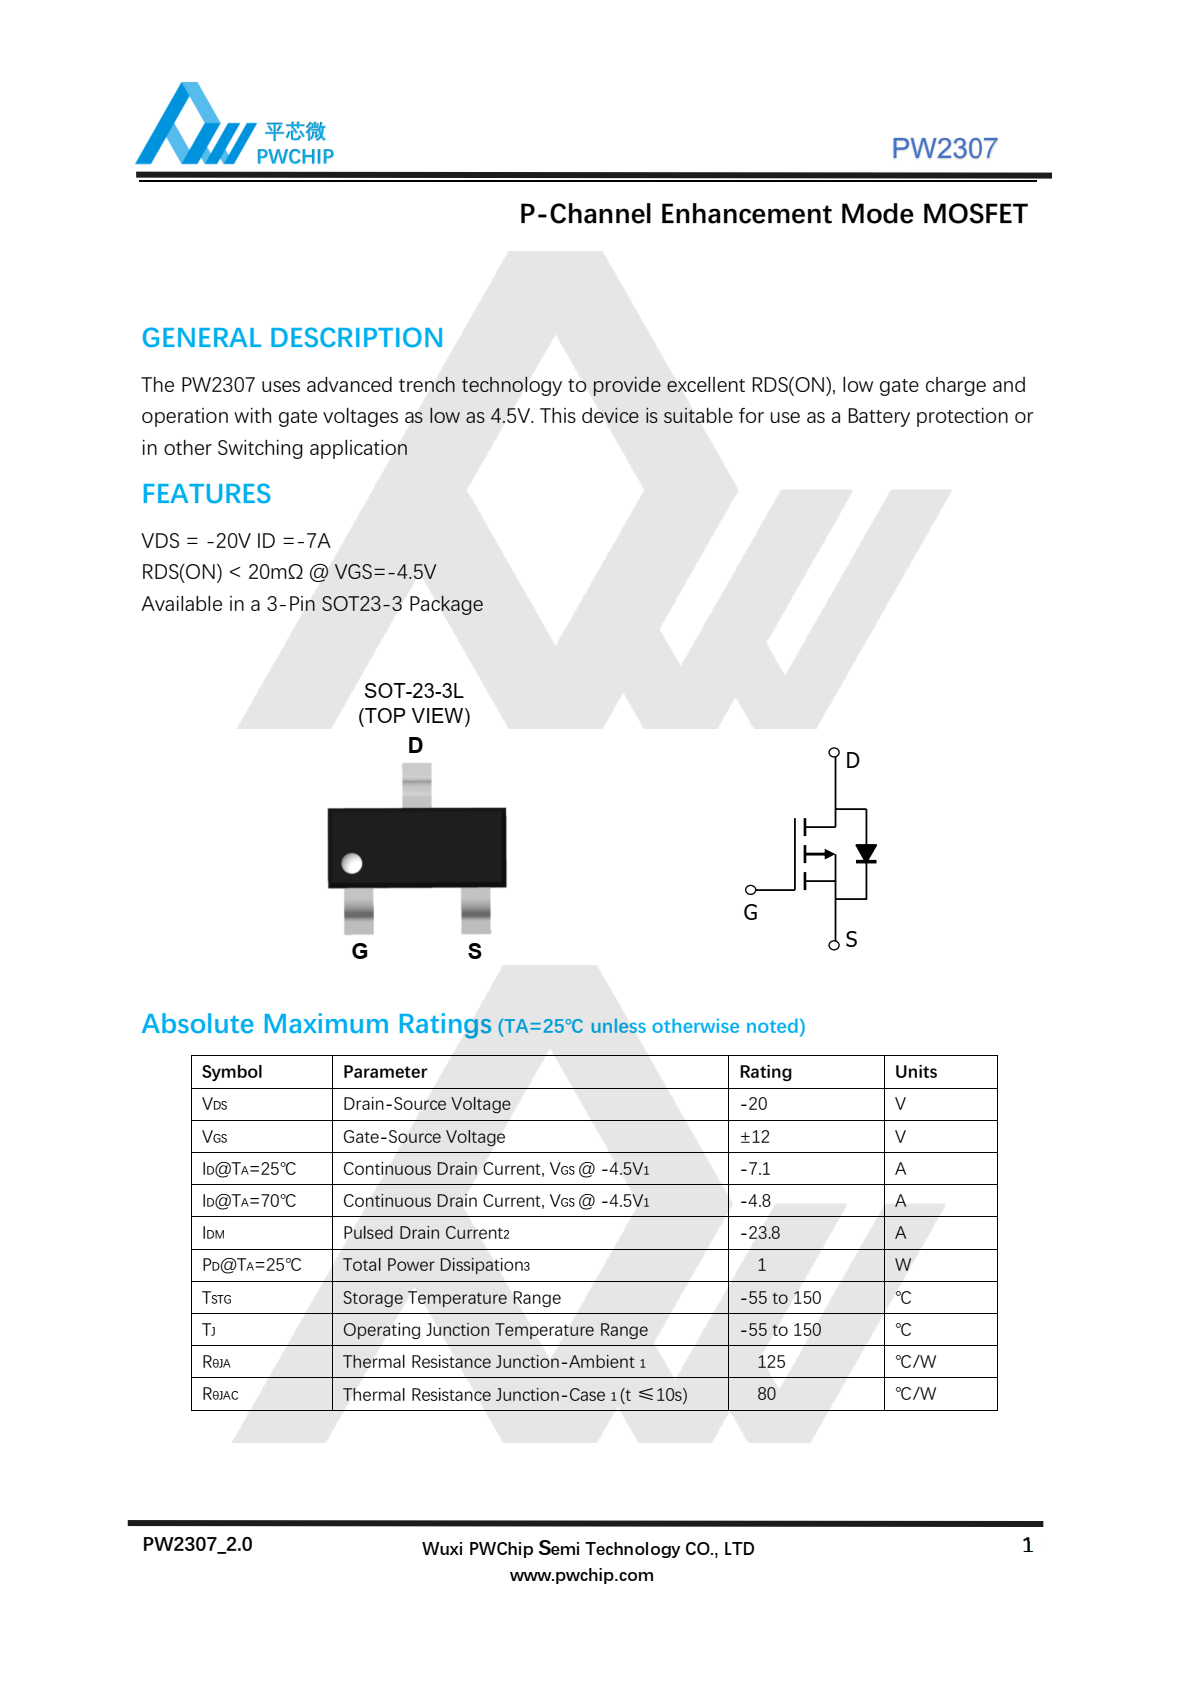 代理PW2307，低栅极电荷和  其栅极电压低至4.5V